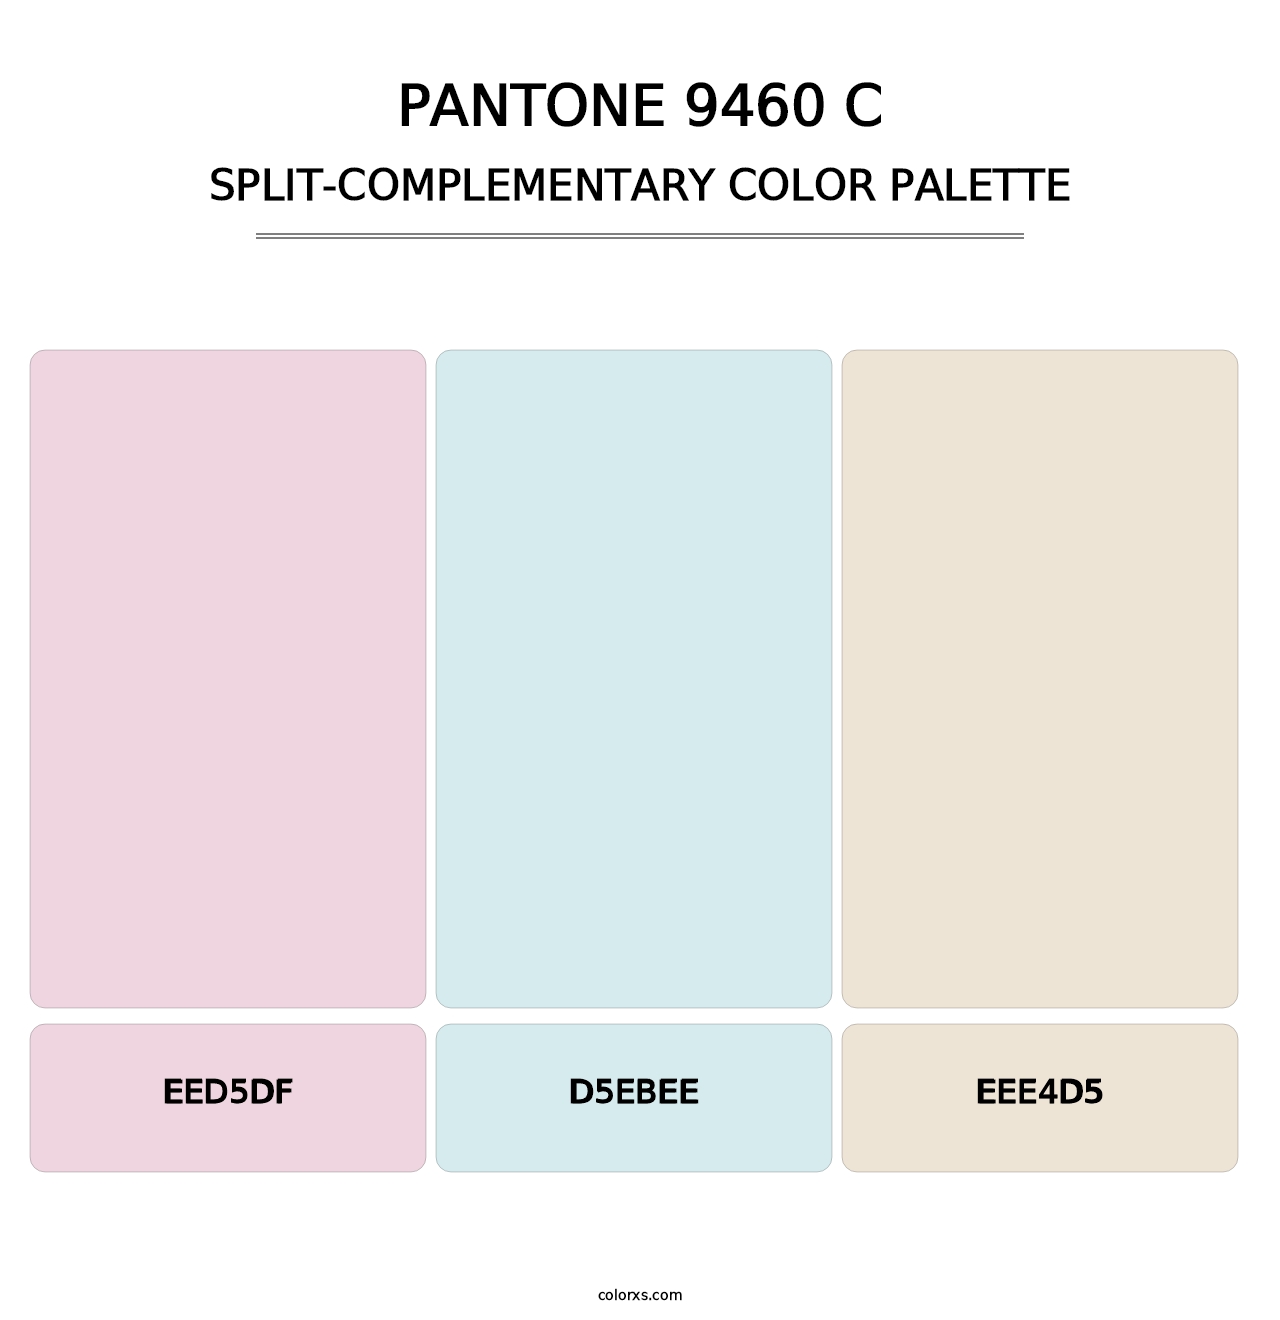 PANTONE 9460 C - Split-Complementary Color Palette